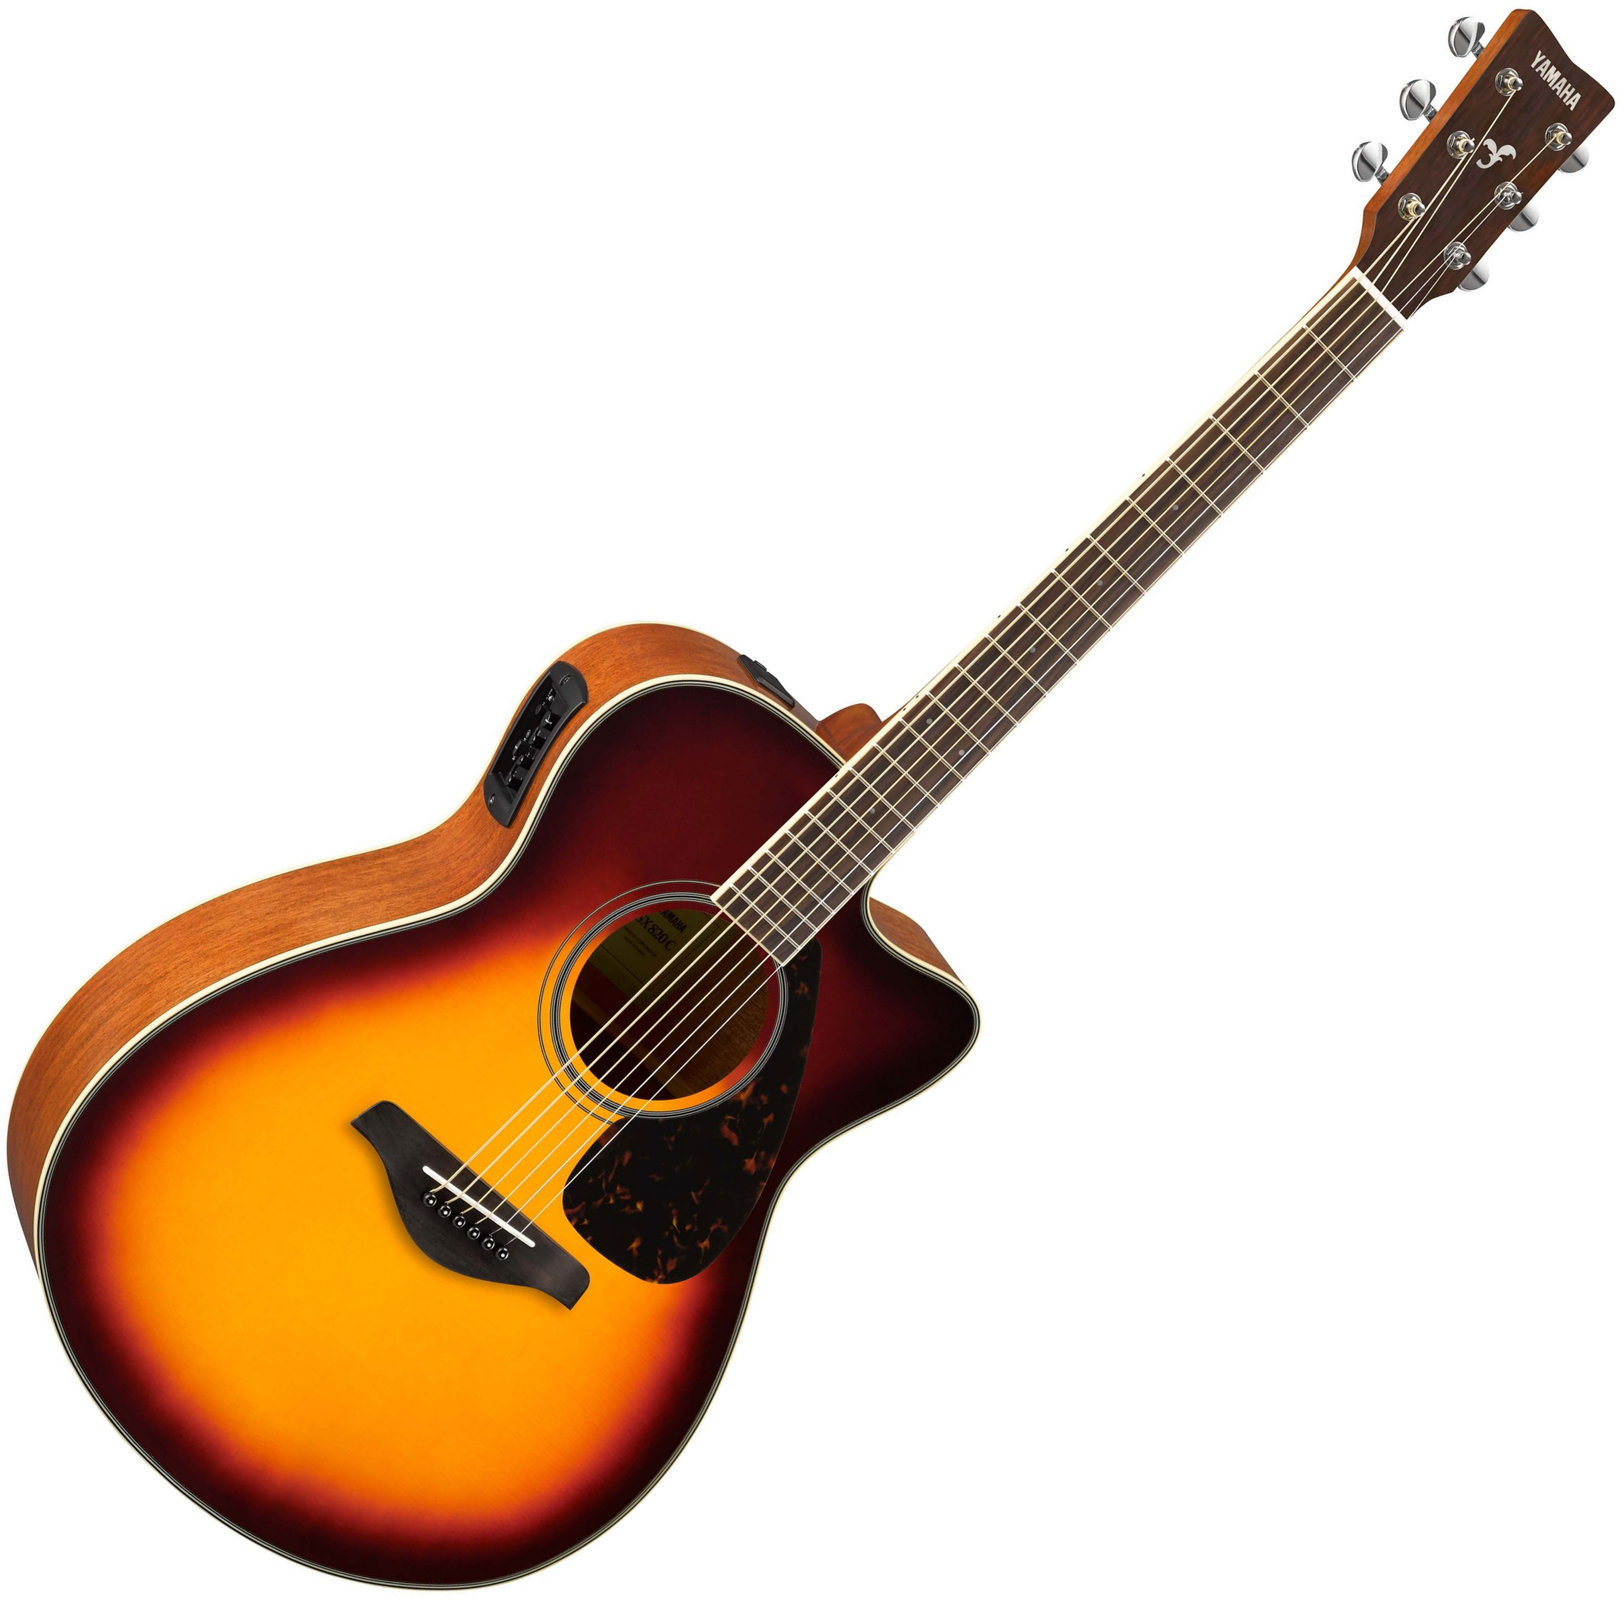 Jumbo elektro-akoestische gitaar Yamaha FSX820C BS Brown Sunburst